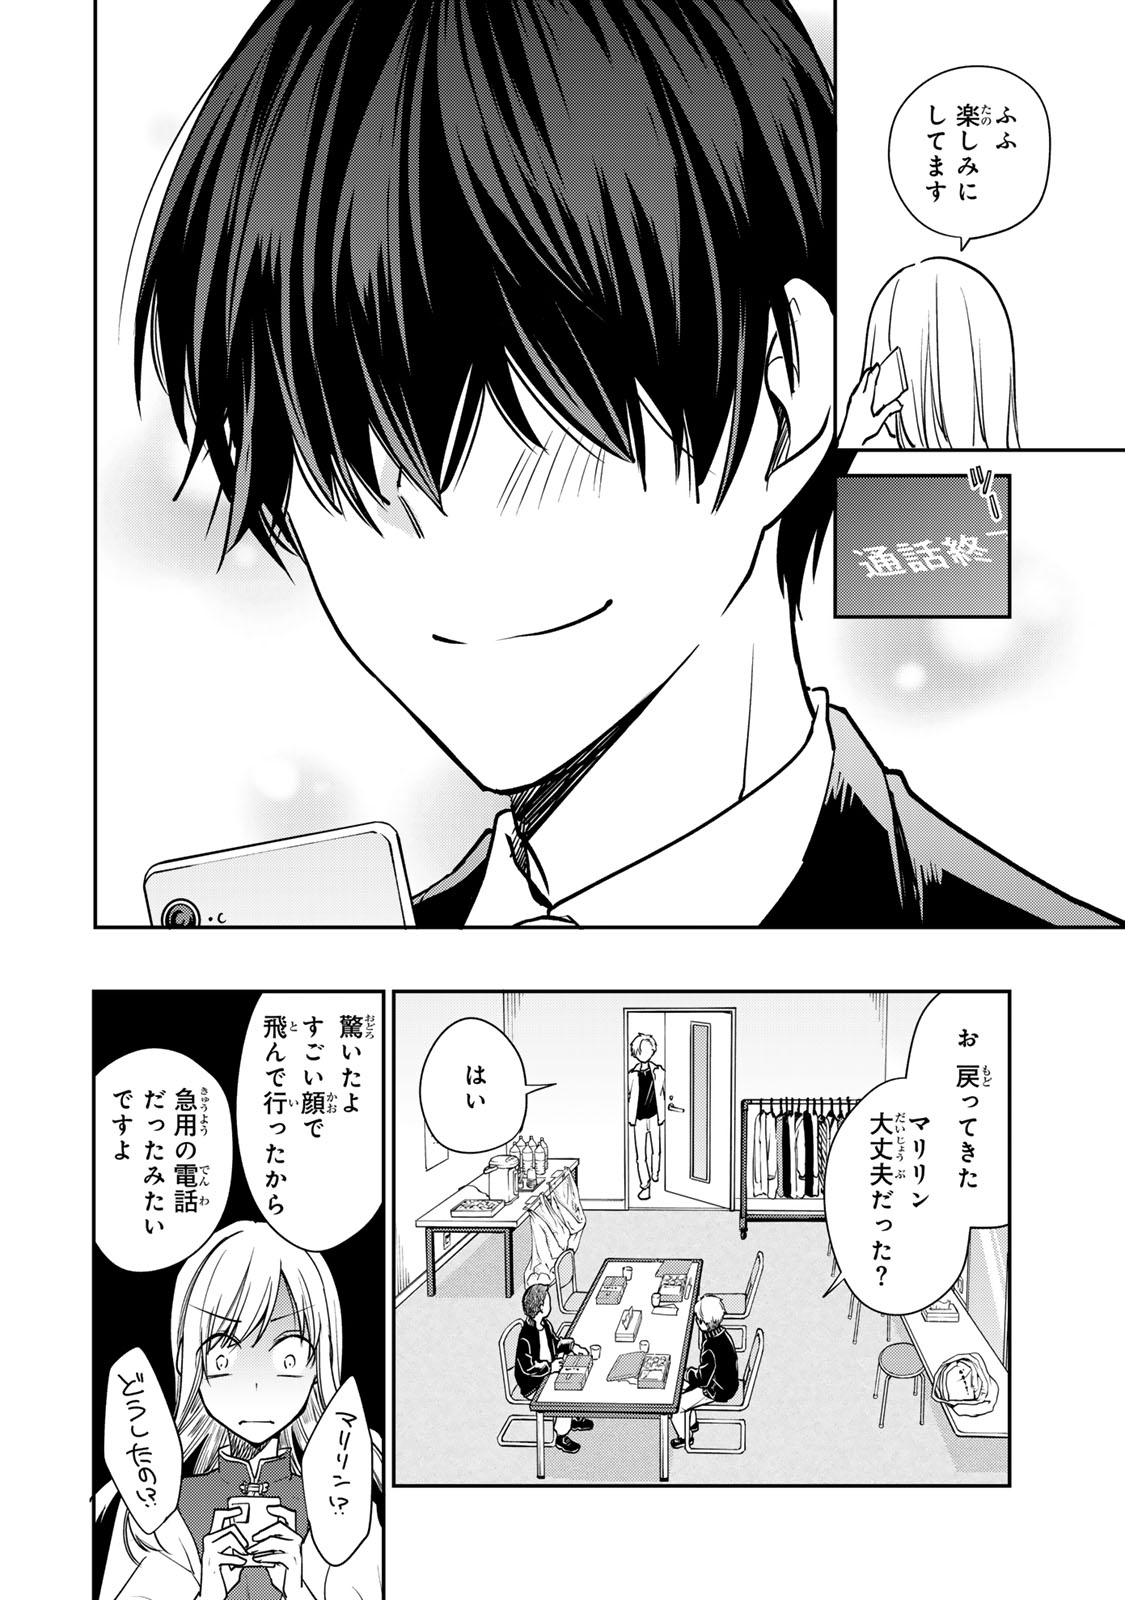 Kyou no Ohiru wa Nan desu ka? - Chapter 5 - Page 18